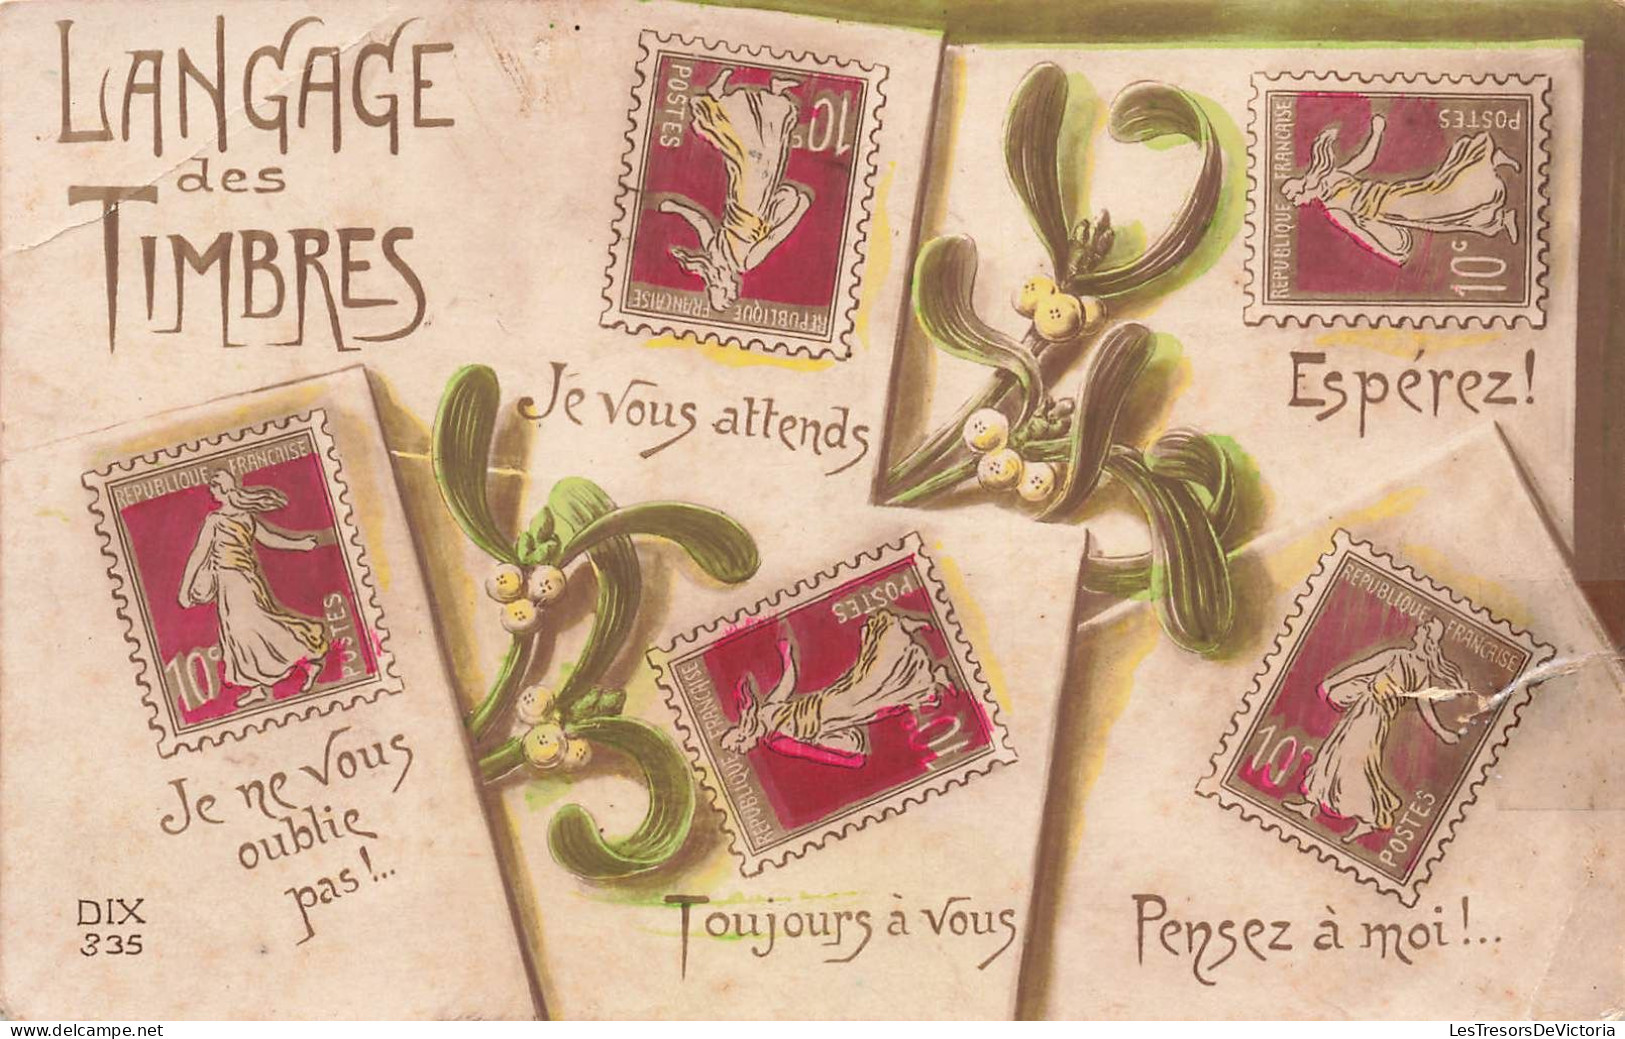 TIMBRES - Langage Des Timbres - Colorisé - Carte Postale Ancienne - Francobolli (rappresentazioni)